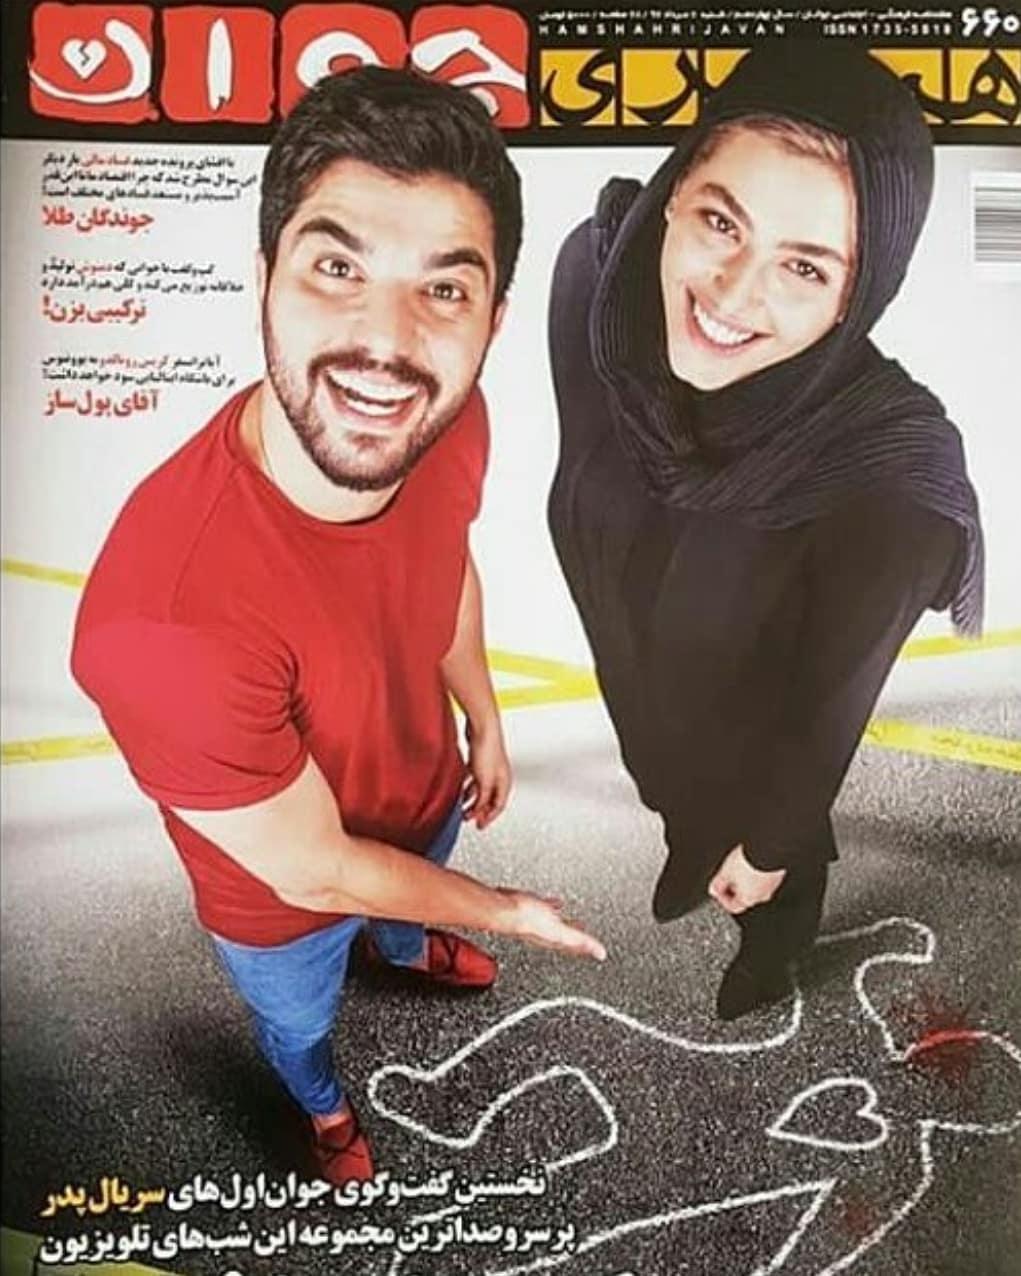 سینا مهراد در پوستر سریال تلویزیونی پدر به همراه ریحانه پارسا